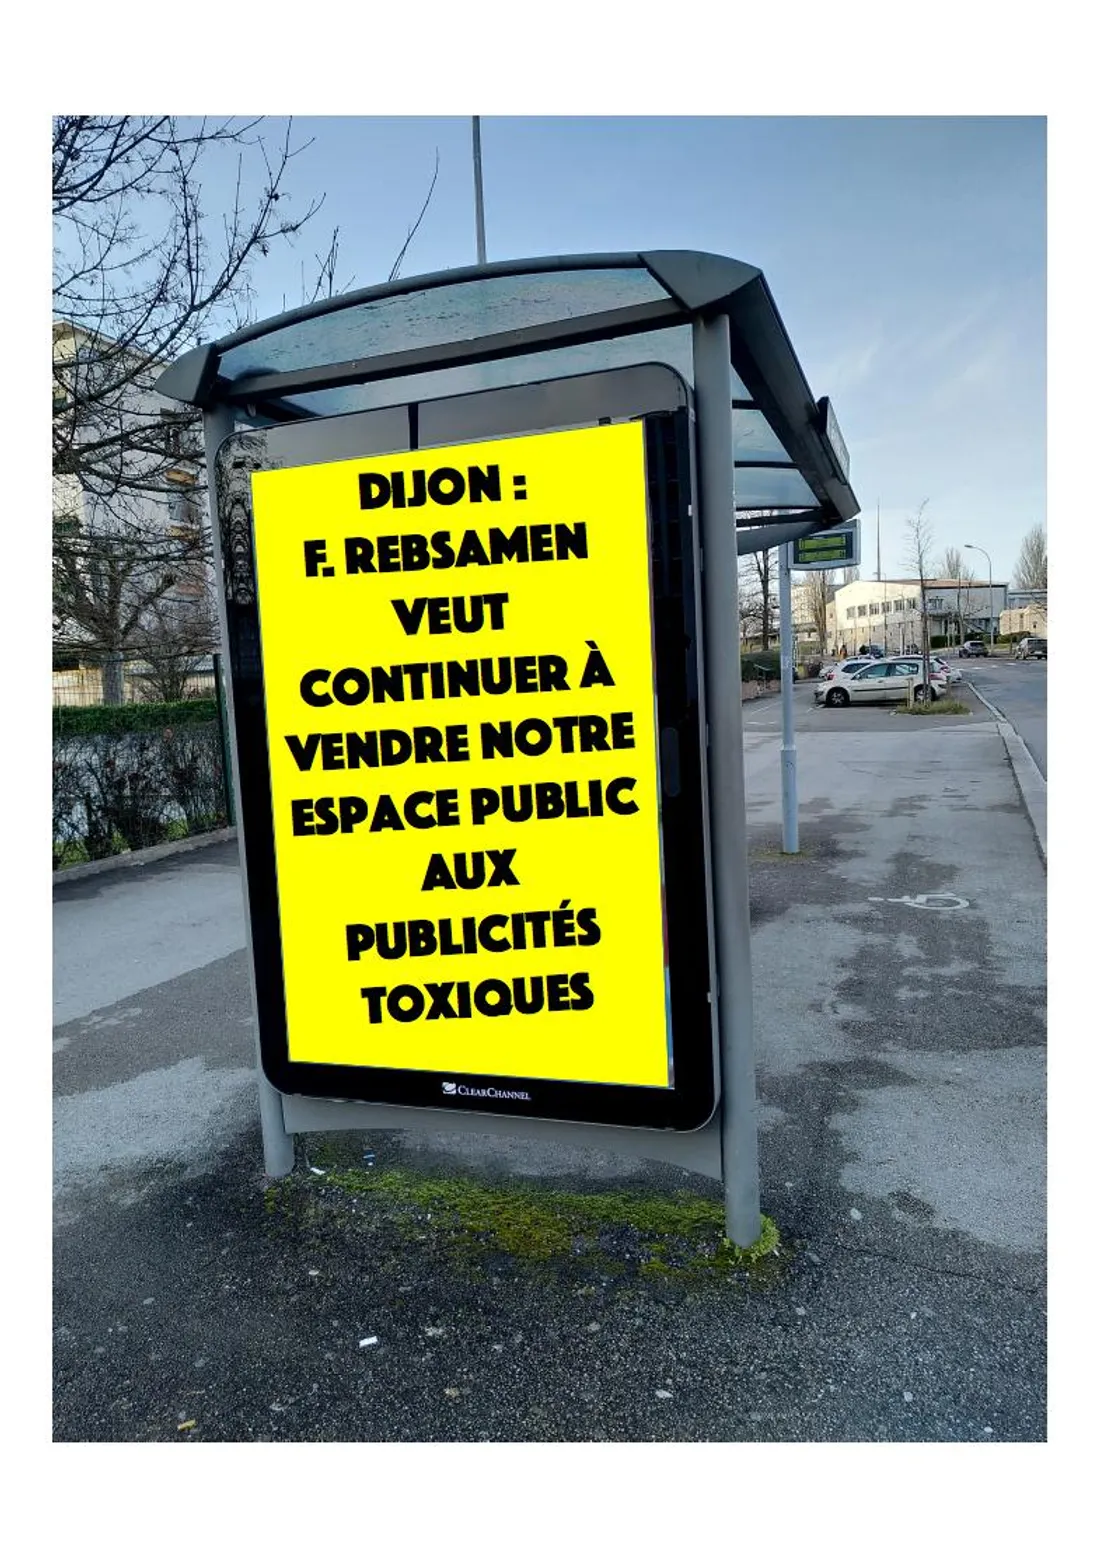 L'association dénonce l'abus de publicité dans les rues de Dijon métropole.